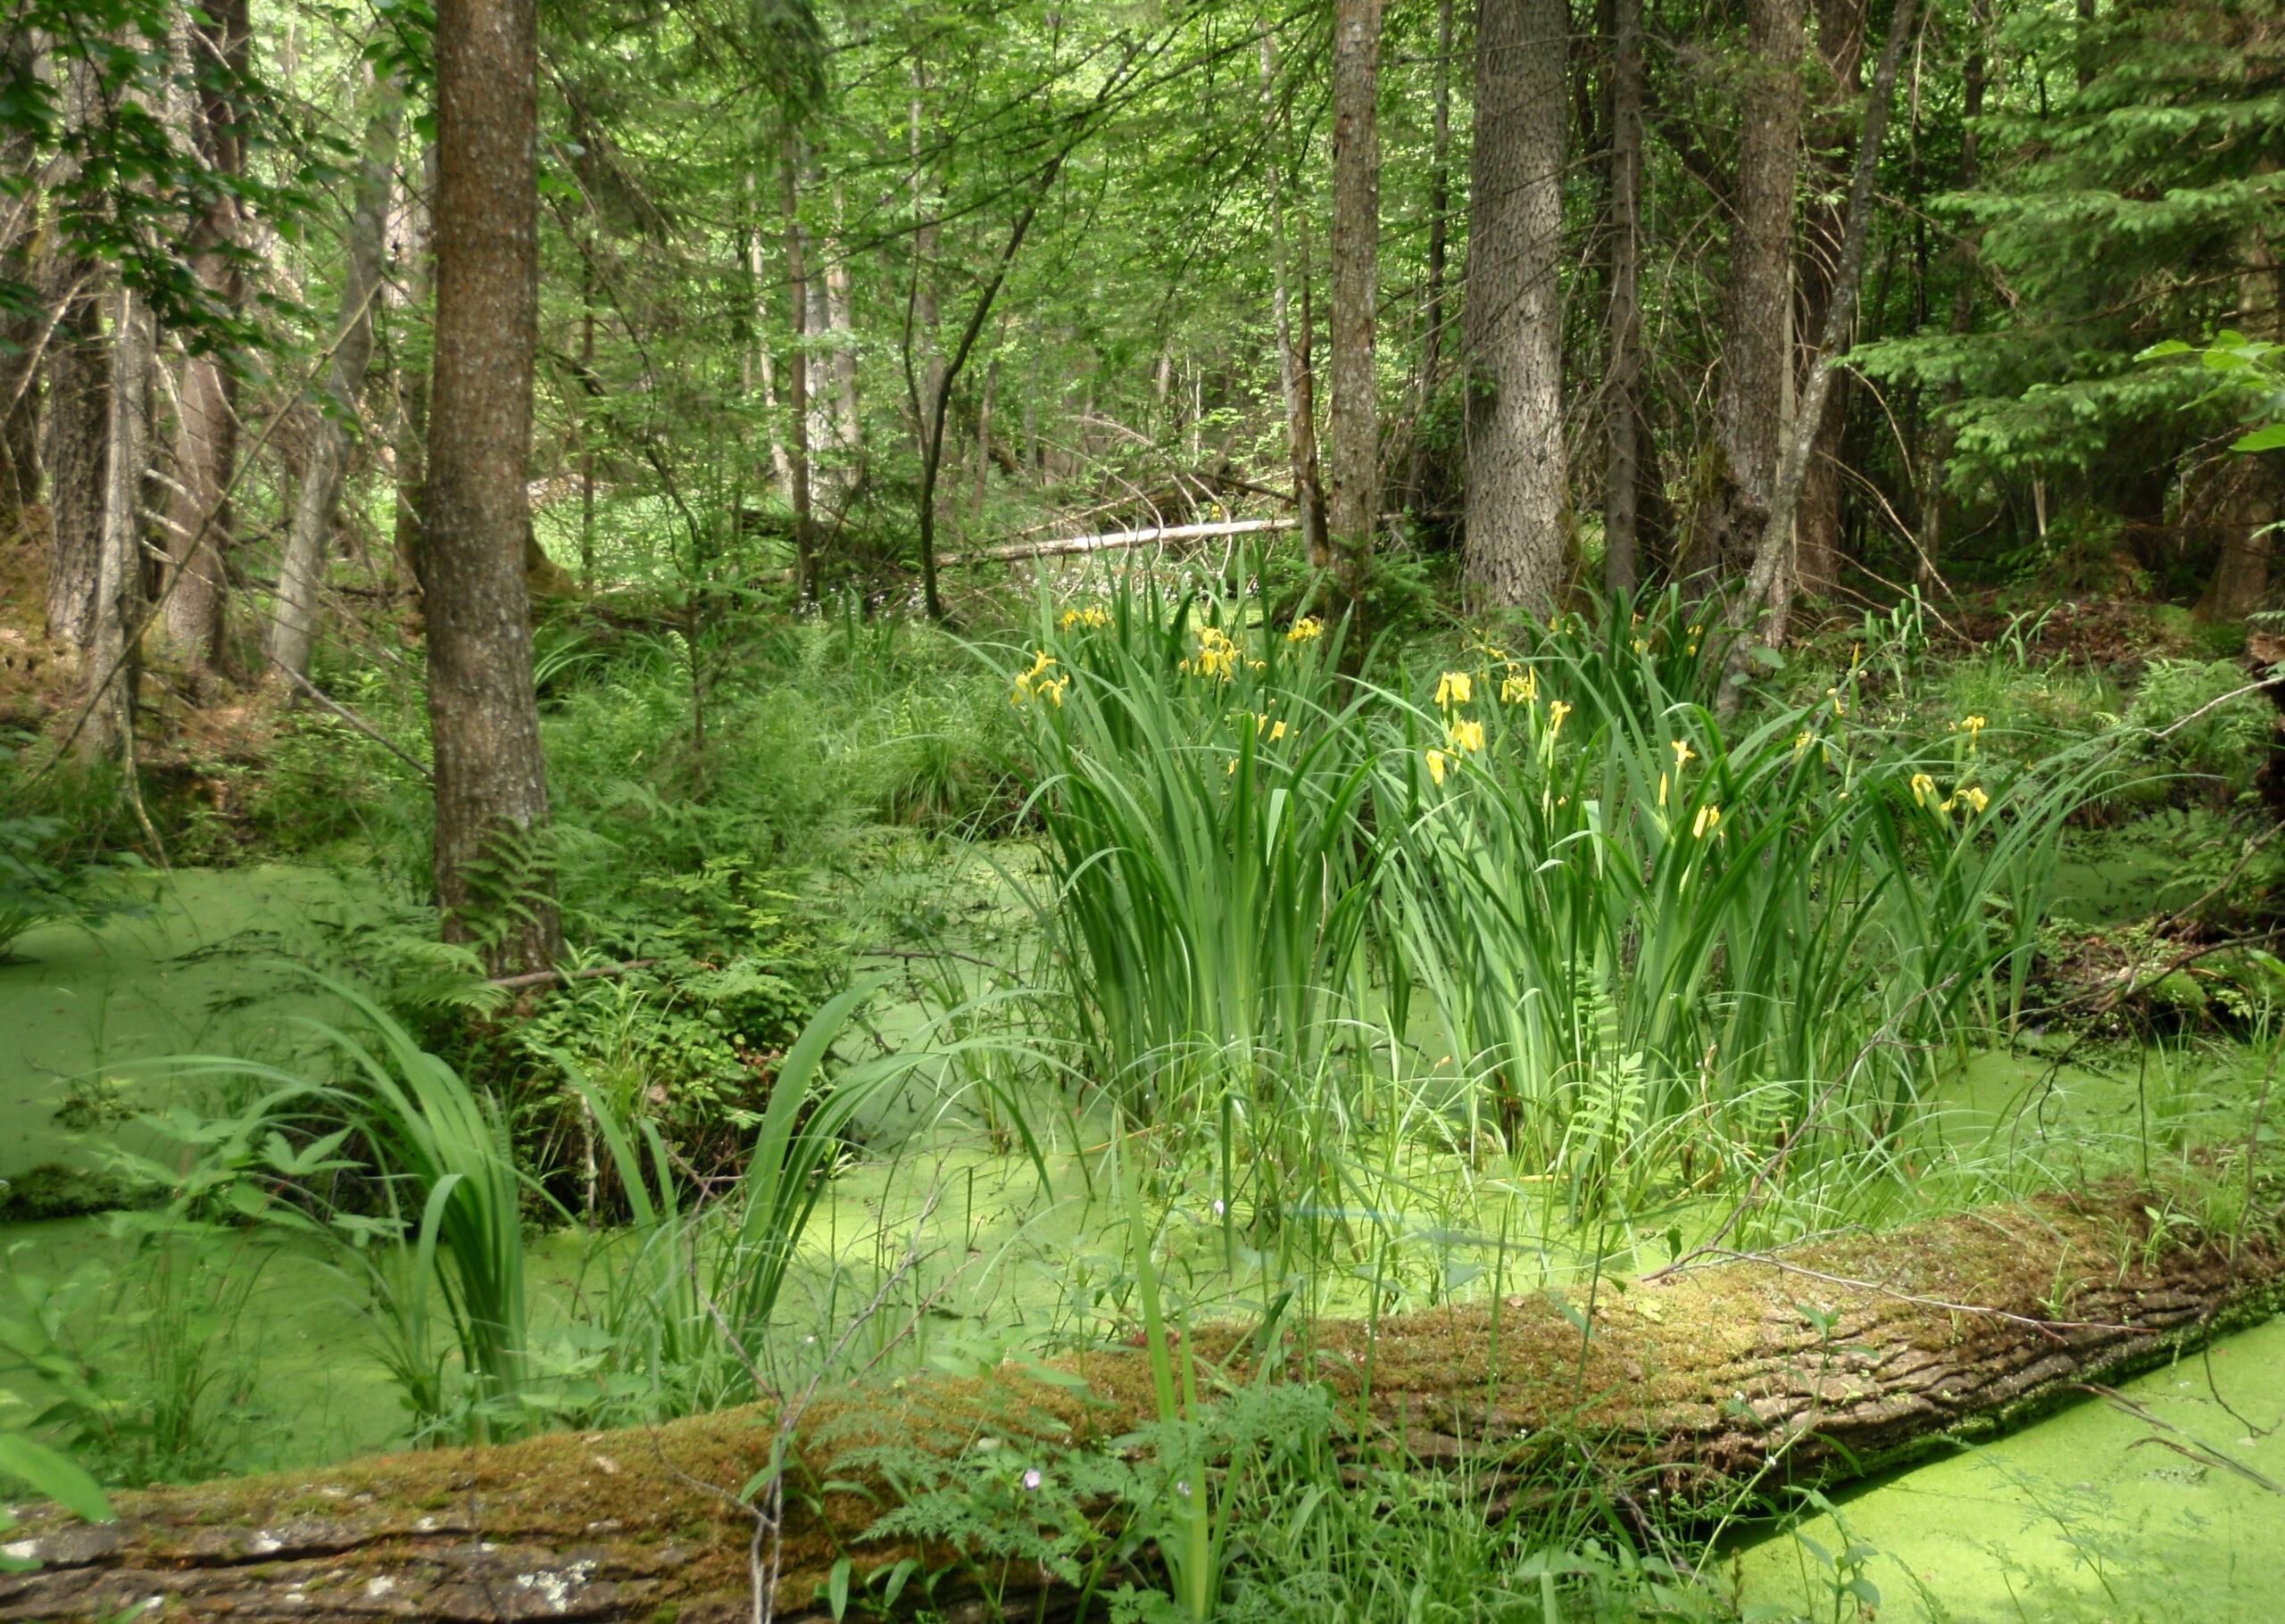 Zdjęcie: podmokły las, widać dużo intensywnie zielonych roślin, na pierwszym planie kłoda drewna porastana przez rośliny.